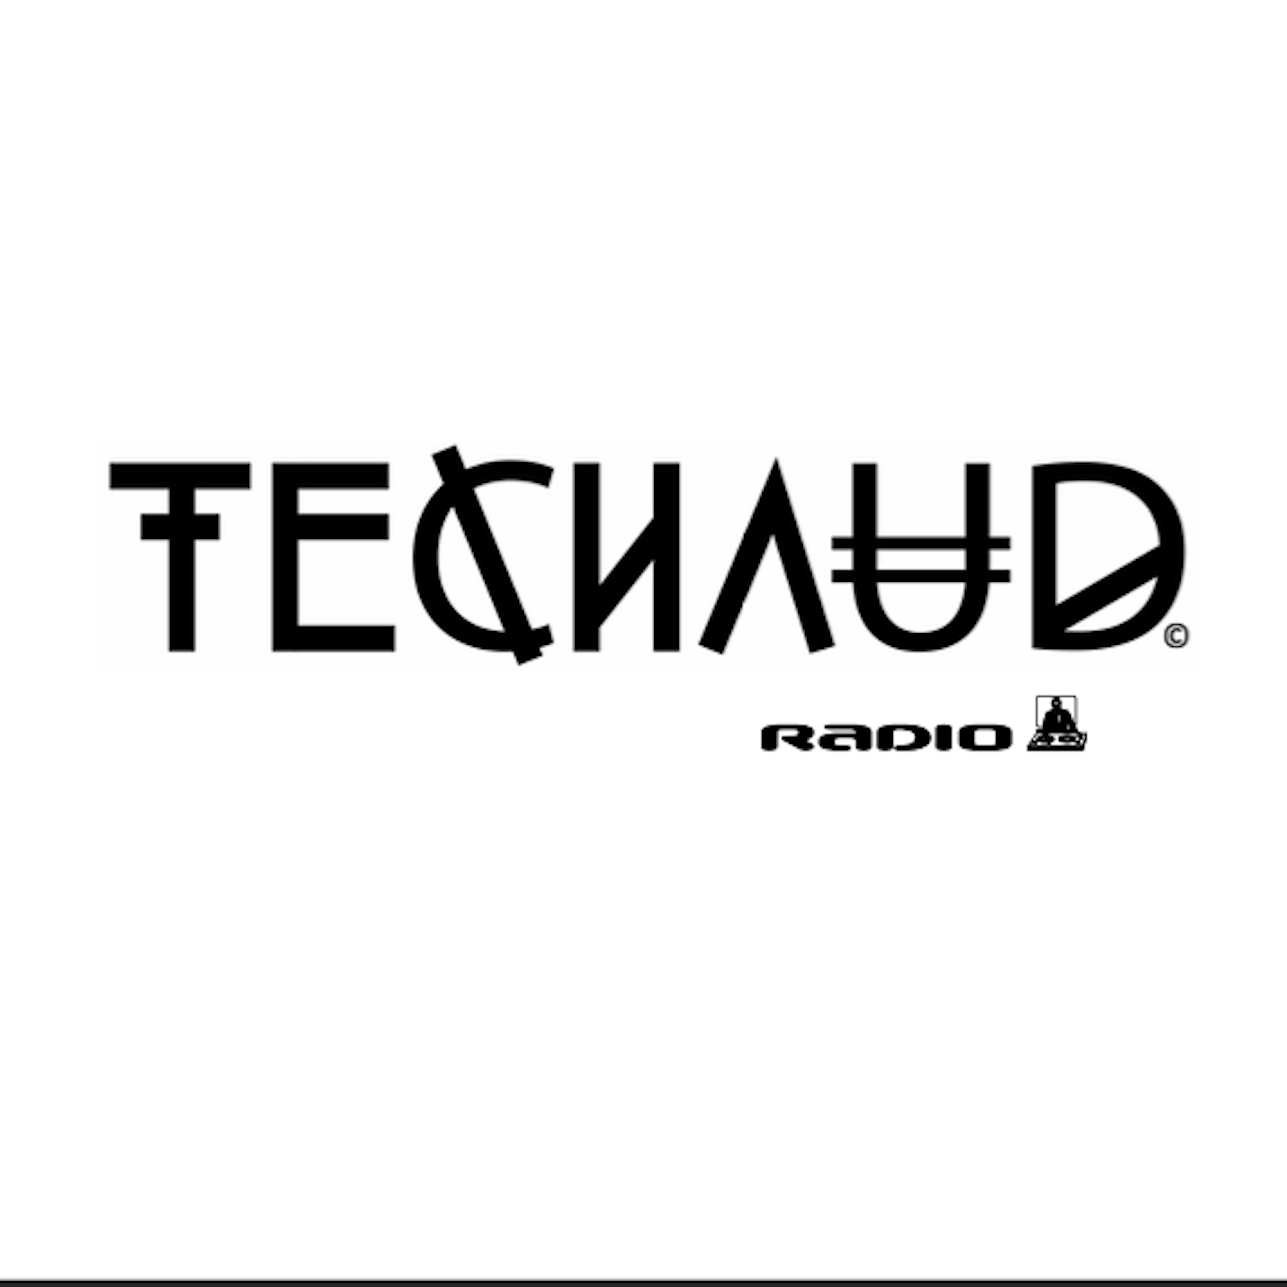 TeChaud Radio